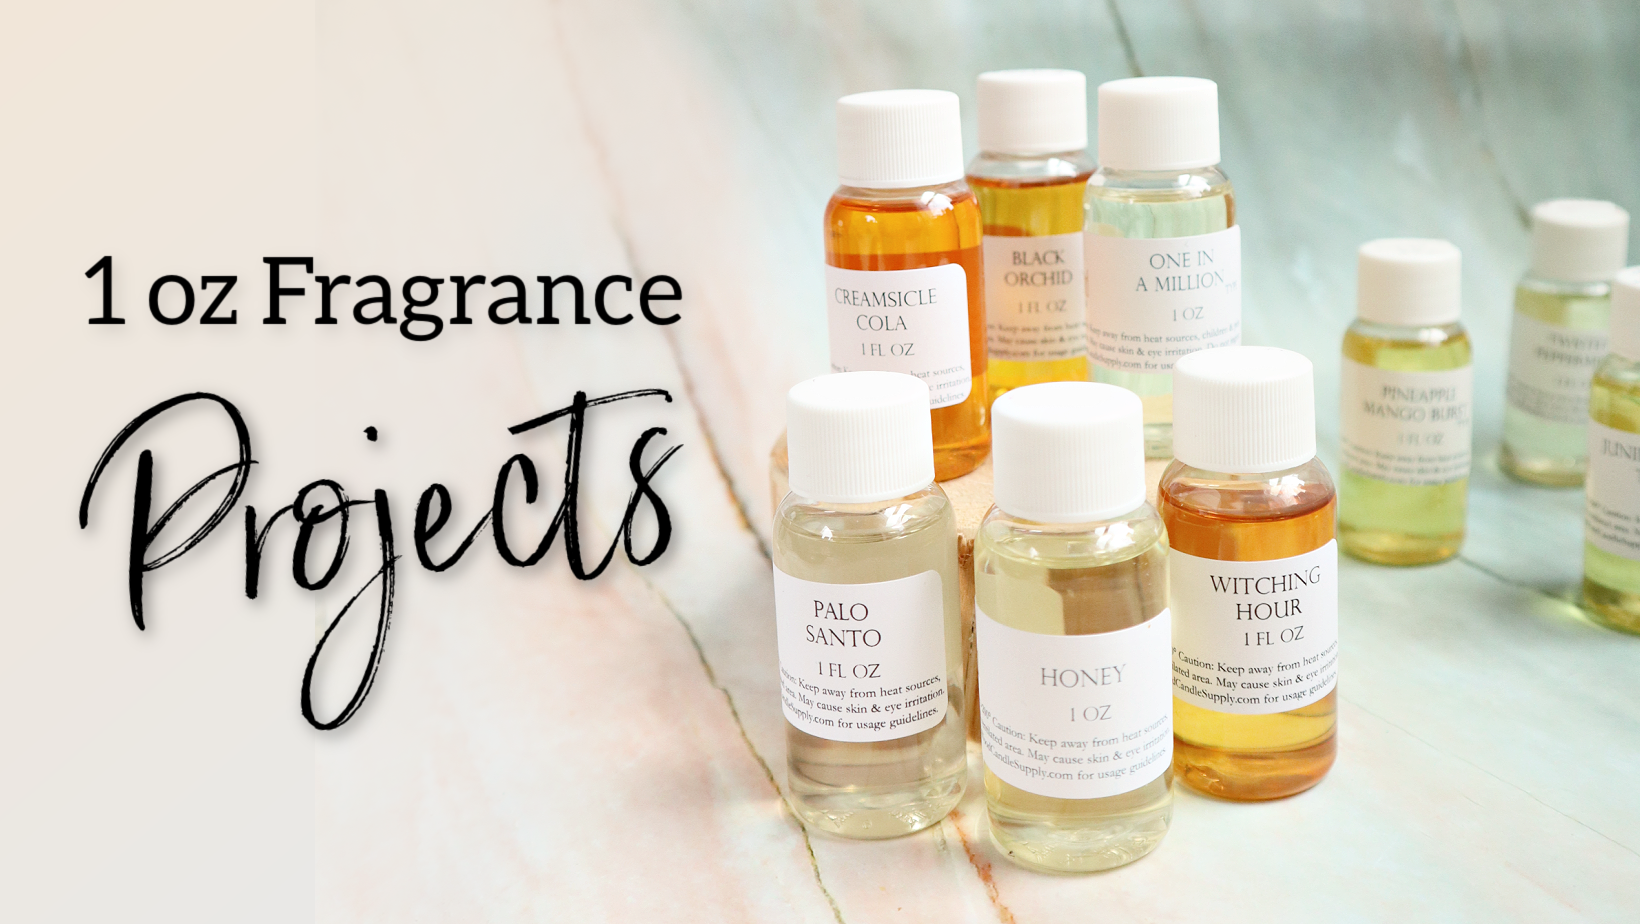 Home Fragrance Oil: 1/2oz (5 Pack)